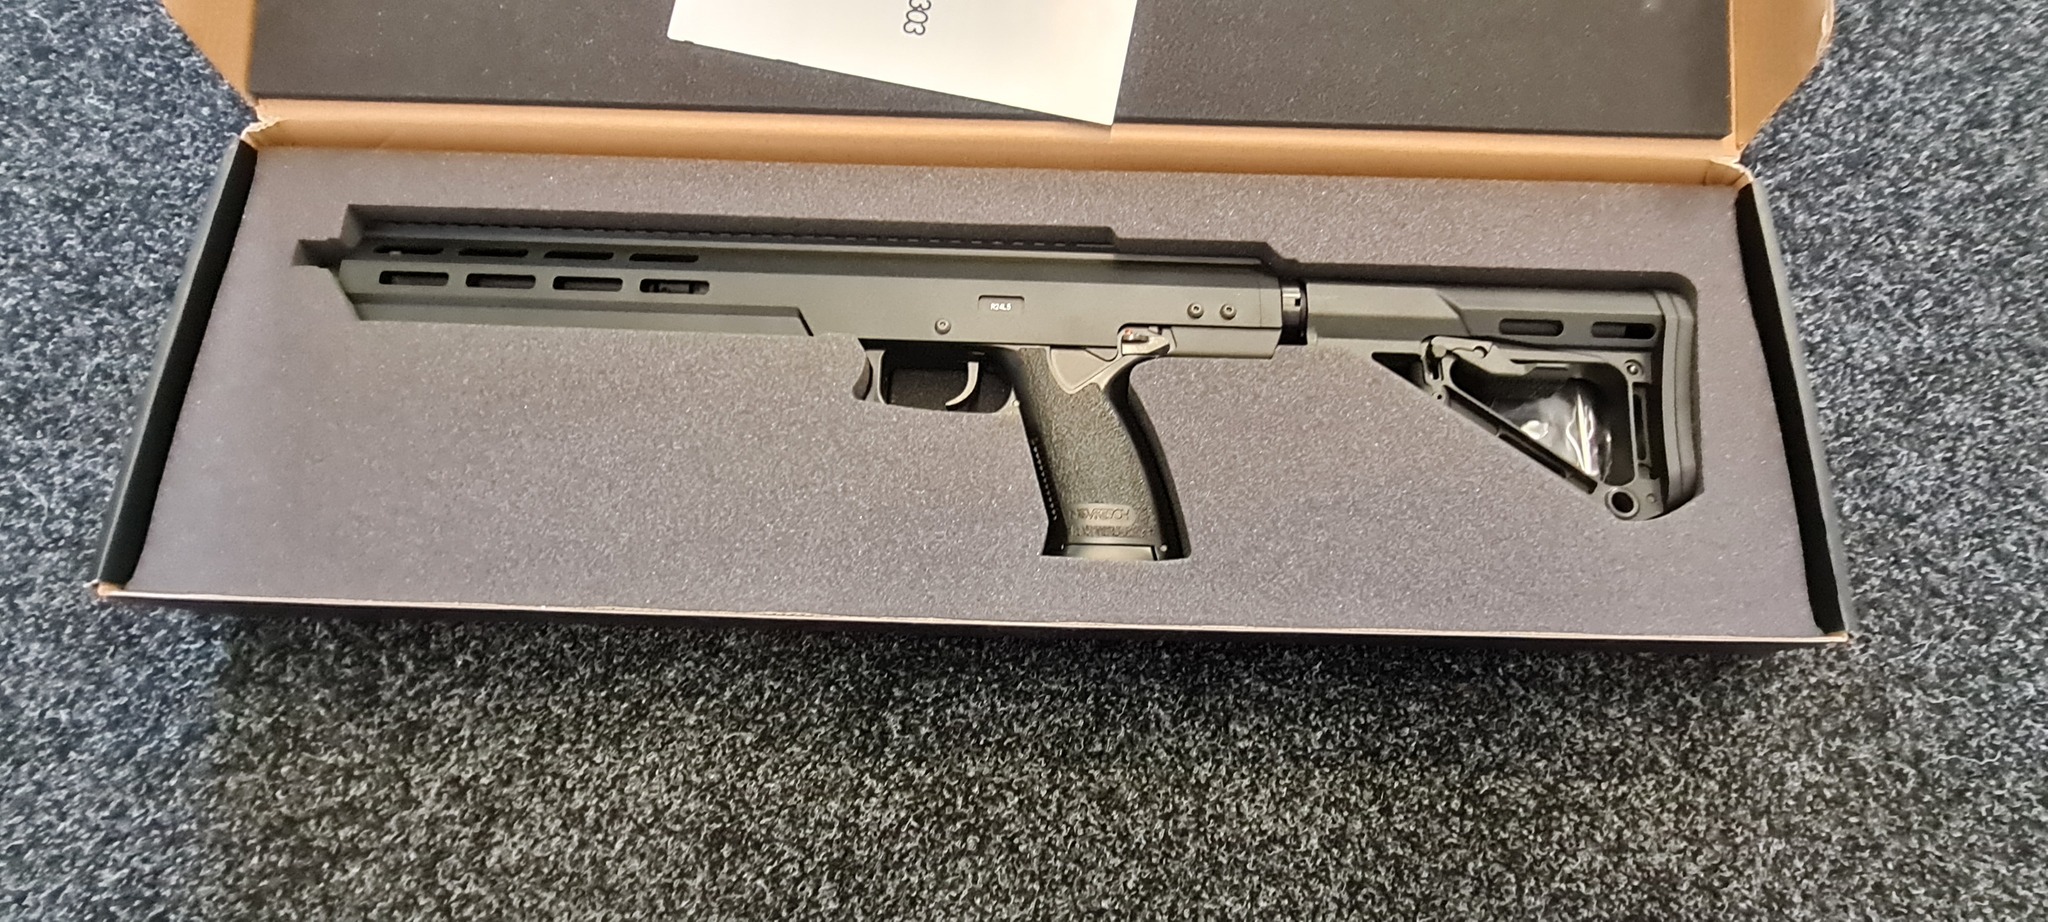 [Novritsch] SSX303 Stealth gas rifle